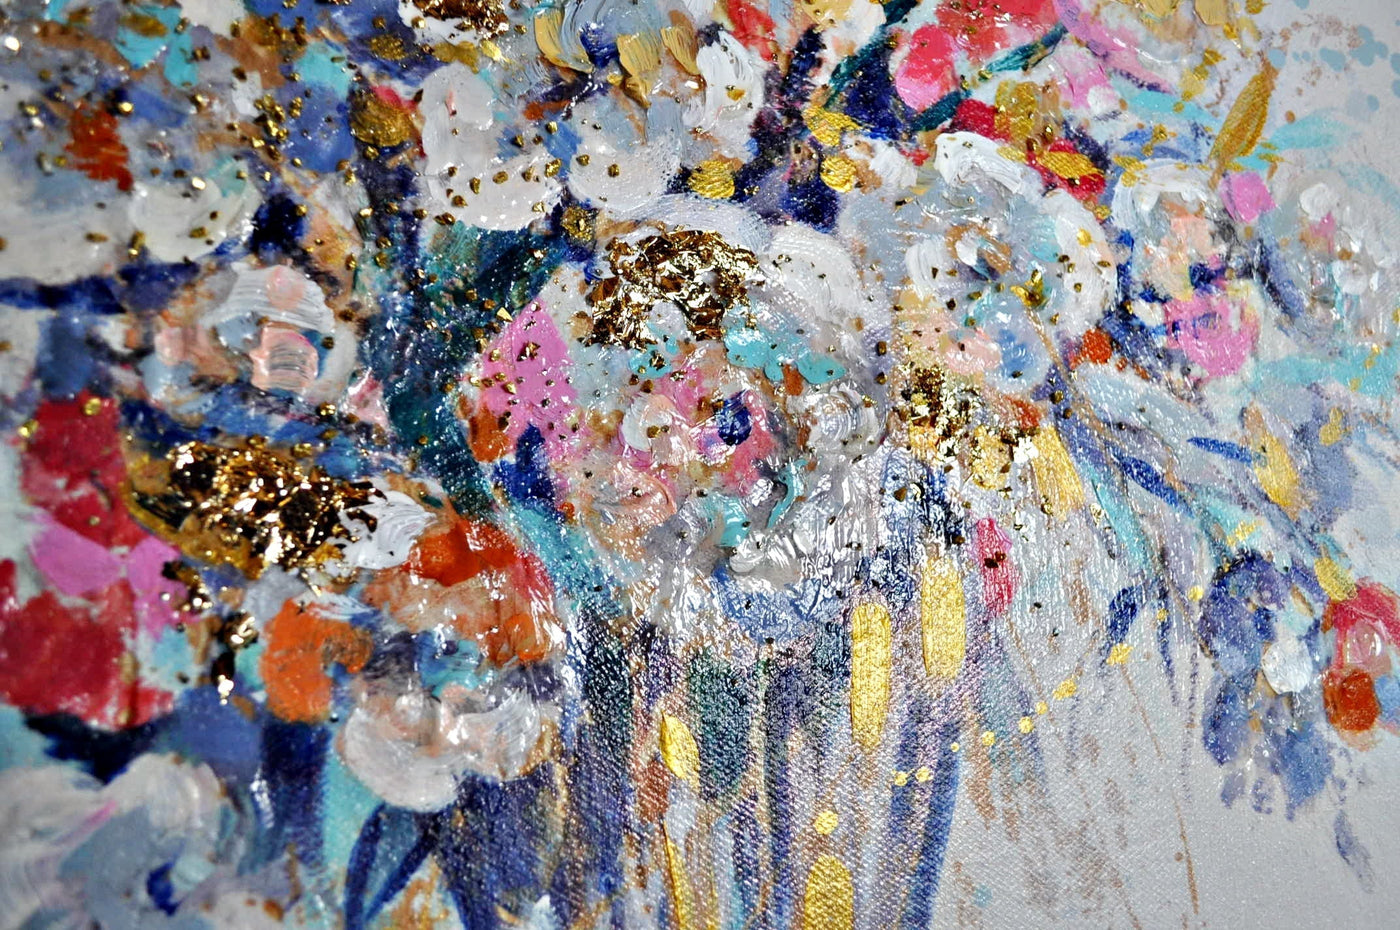 Leinwandbild Wiesen Blumenstrauß 60 x 60 cm Schöne Deko